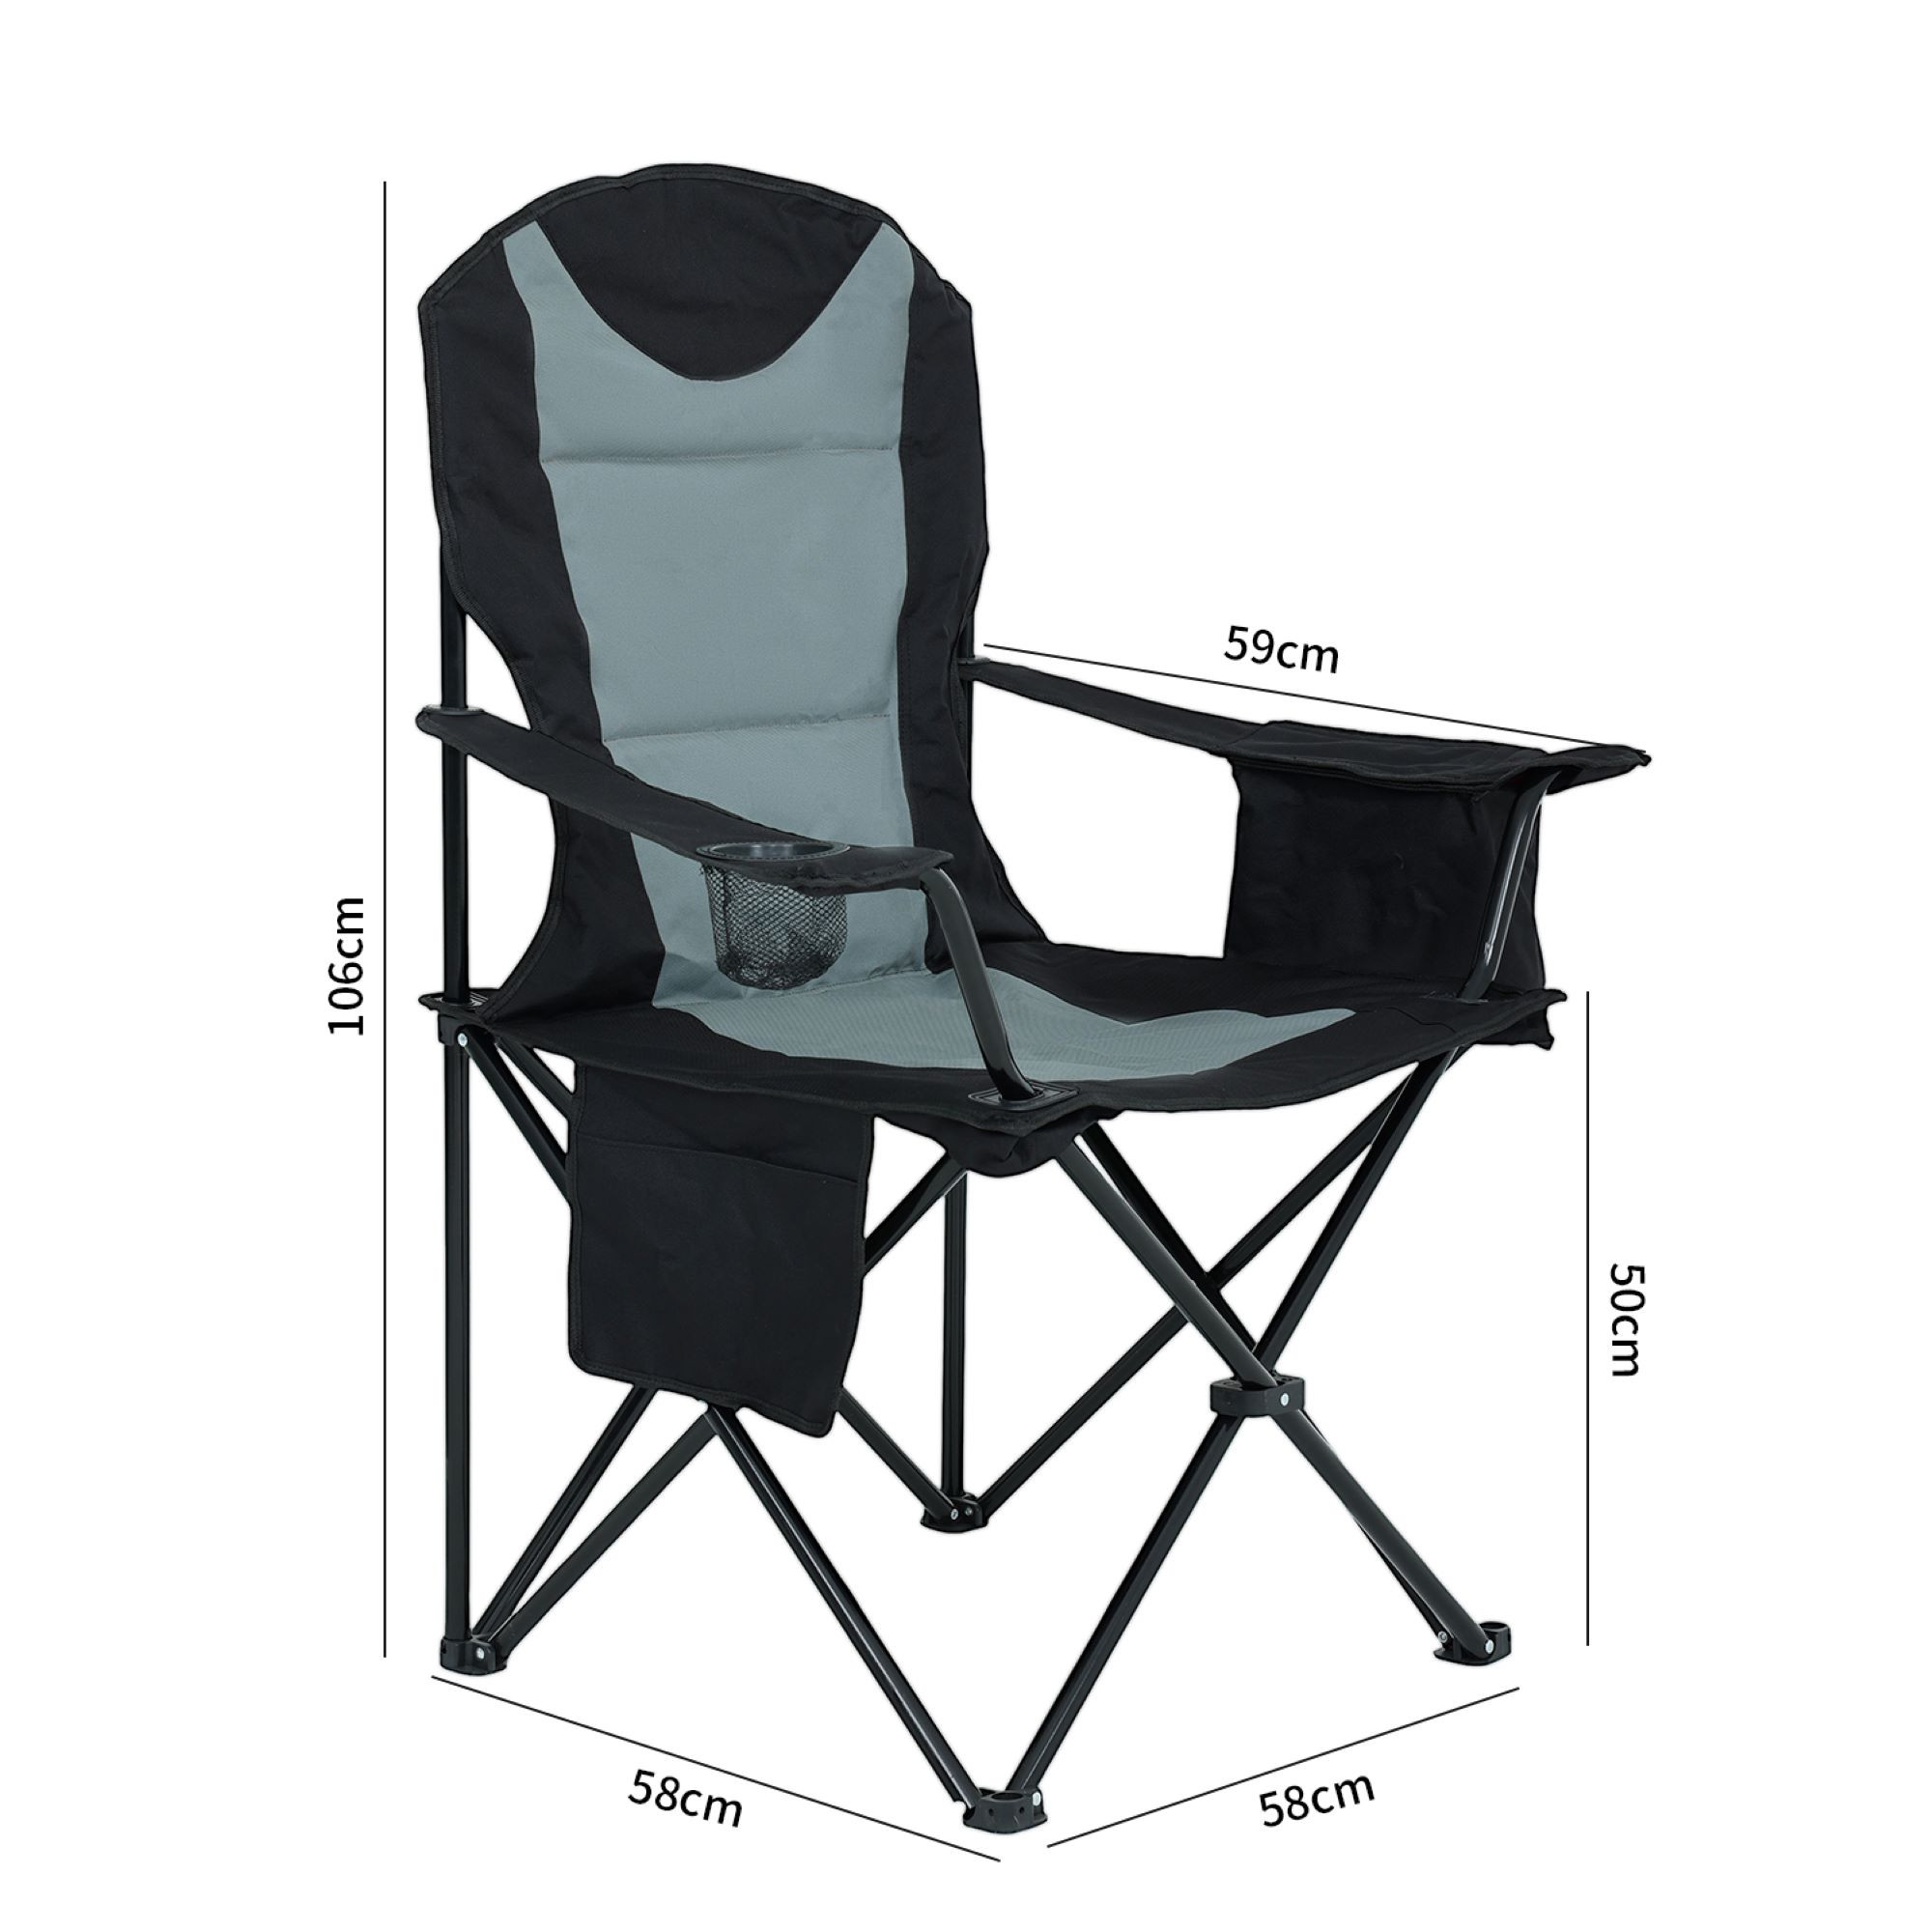 Wymiary 3D - Wygodne krzesło kempingowe FOTYN z uchwytem na kubek i pojemnikiem chłodzącym w kolorze czarnym z szarym - AKORD Fabryka Mebli